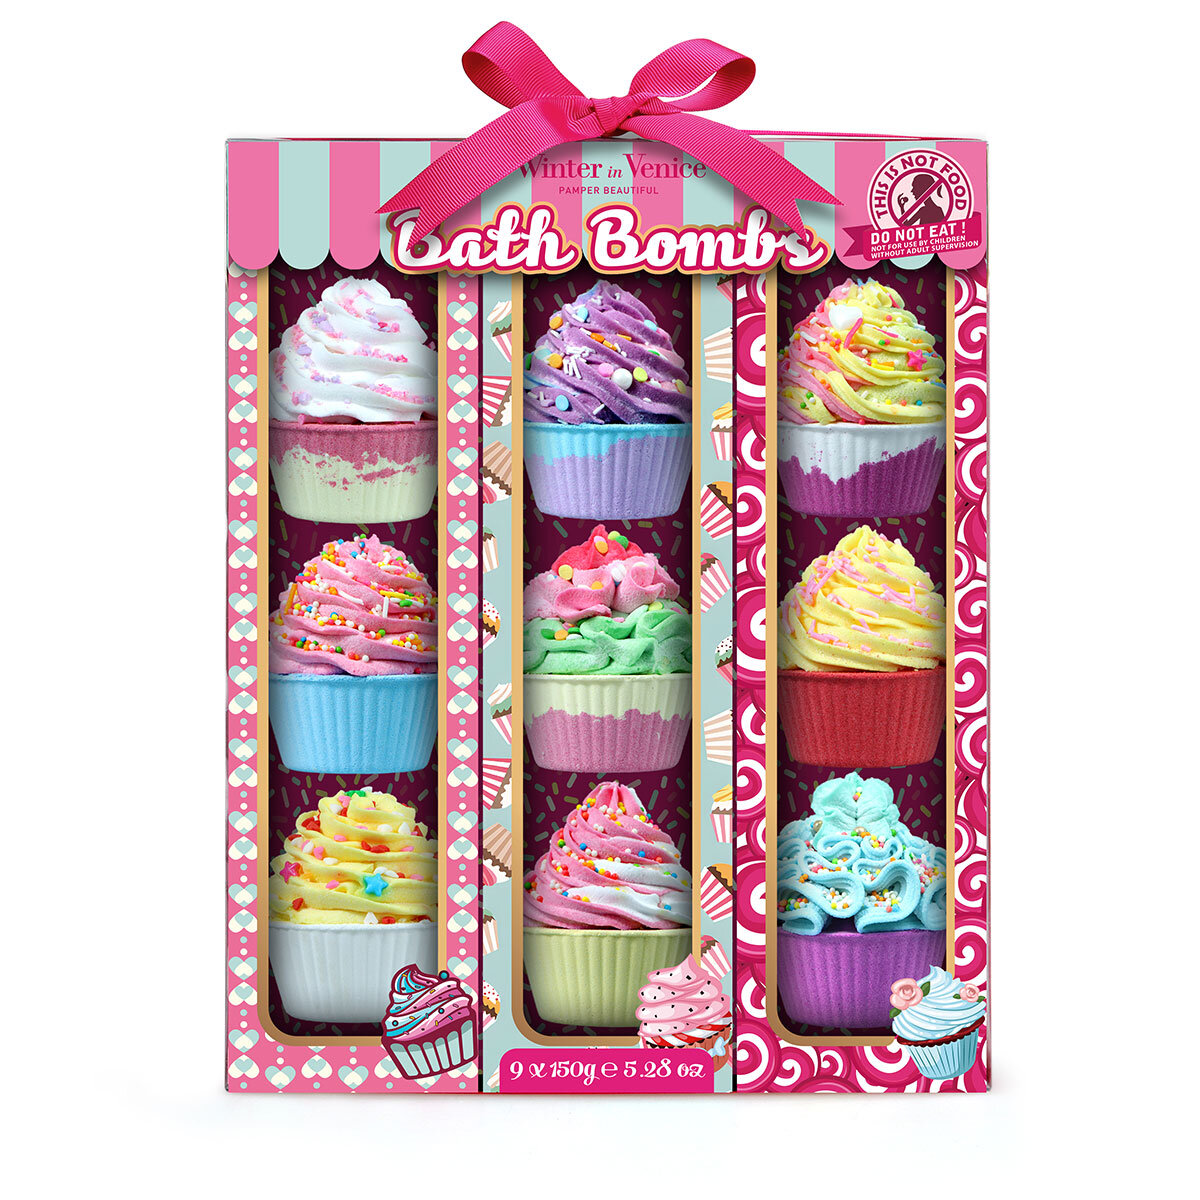 Winter in Venice Cupcake Bath Bombs, 9 Piece Set